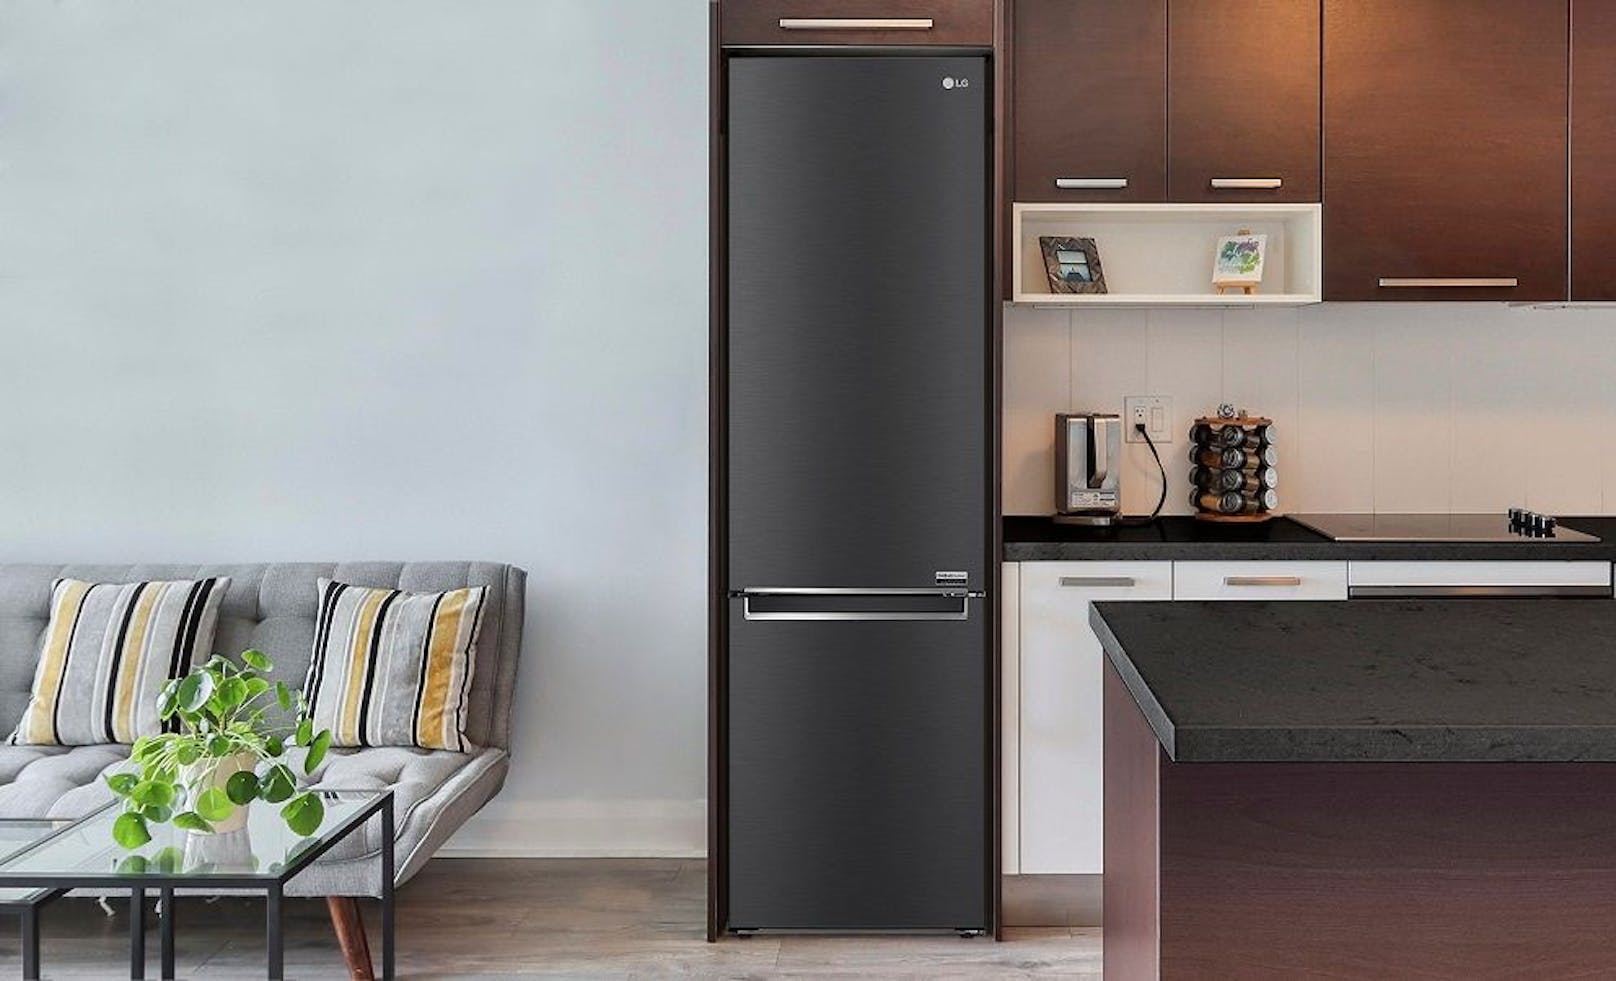 Neue LG Kühl-Gefrierkombination toppt Energieverbrauch vergleichbarer Klasse "A"-Geräte um zehn Prozent.